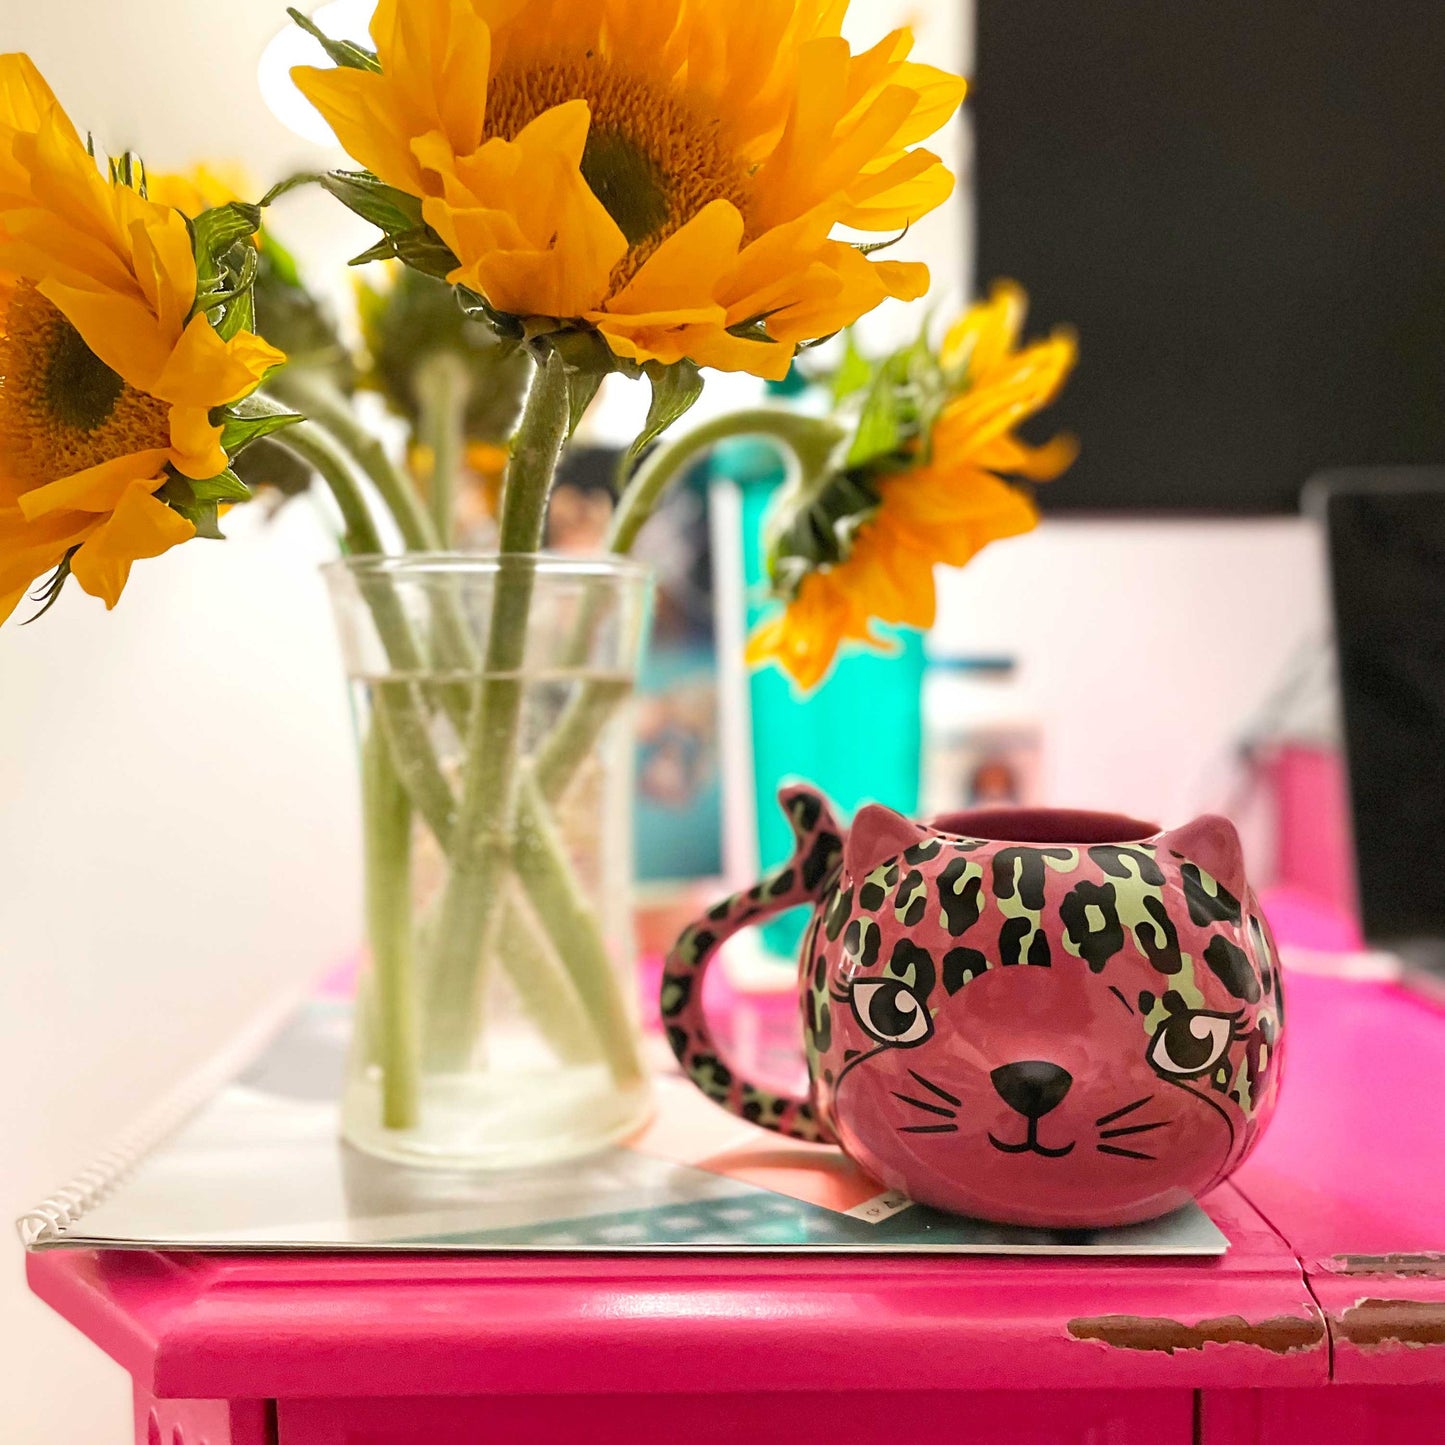 Pink Leopard Cat Mug | Cute Ceramic Coffee Tea Cup